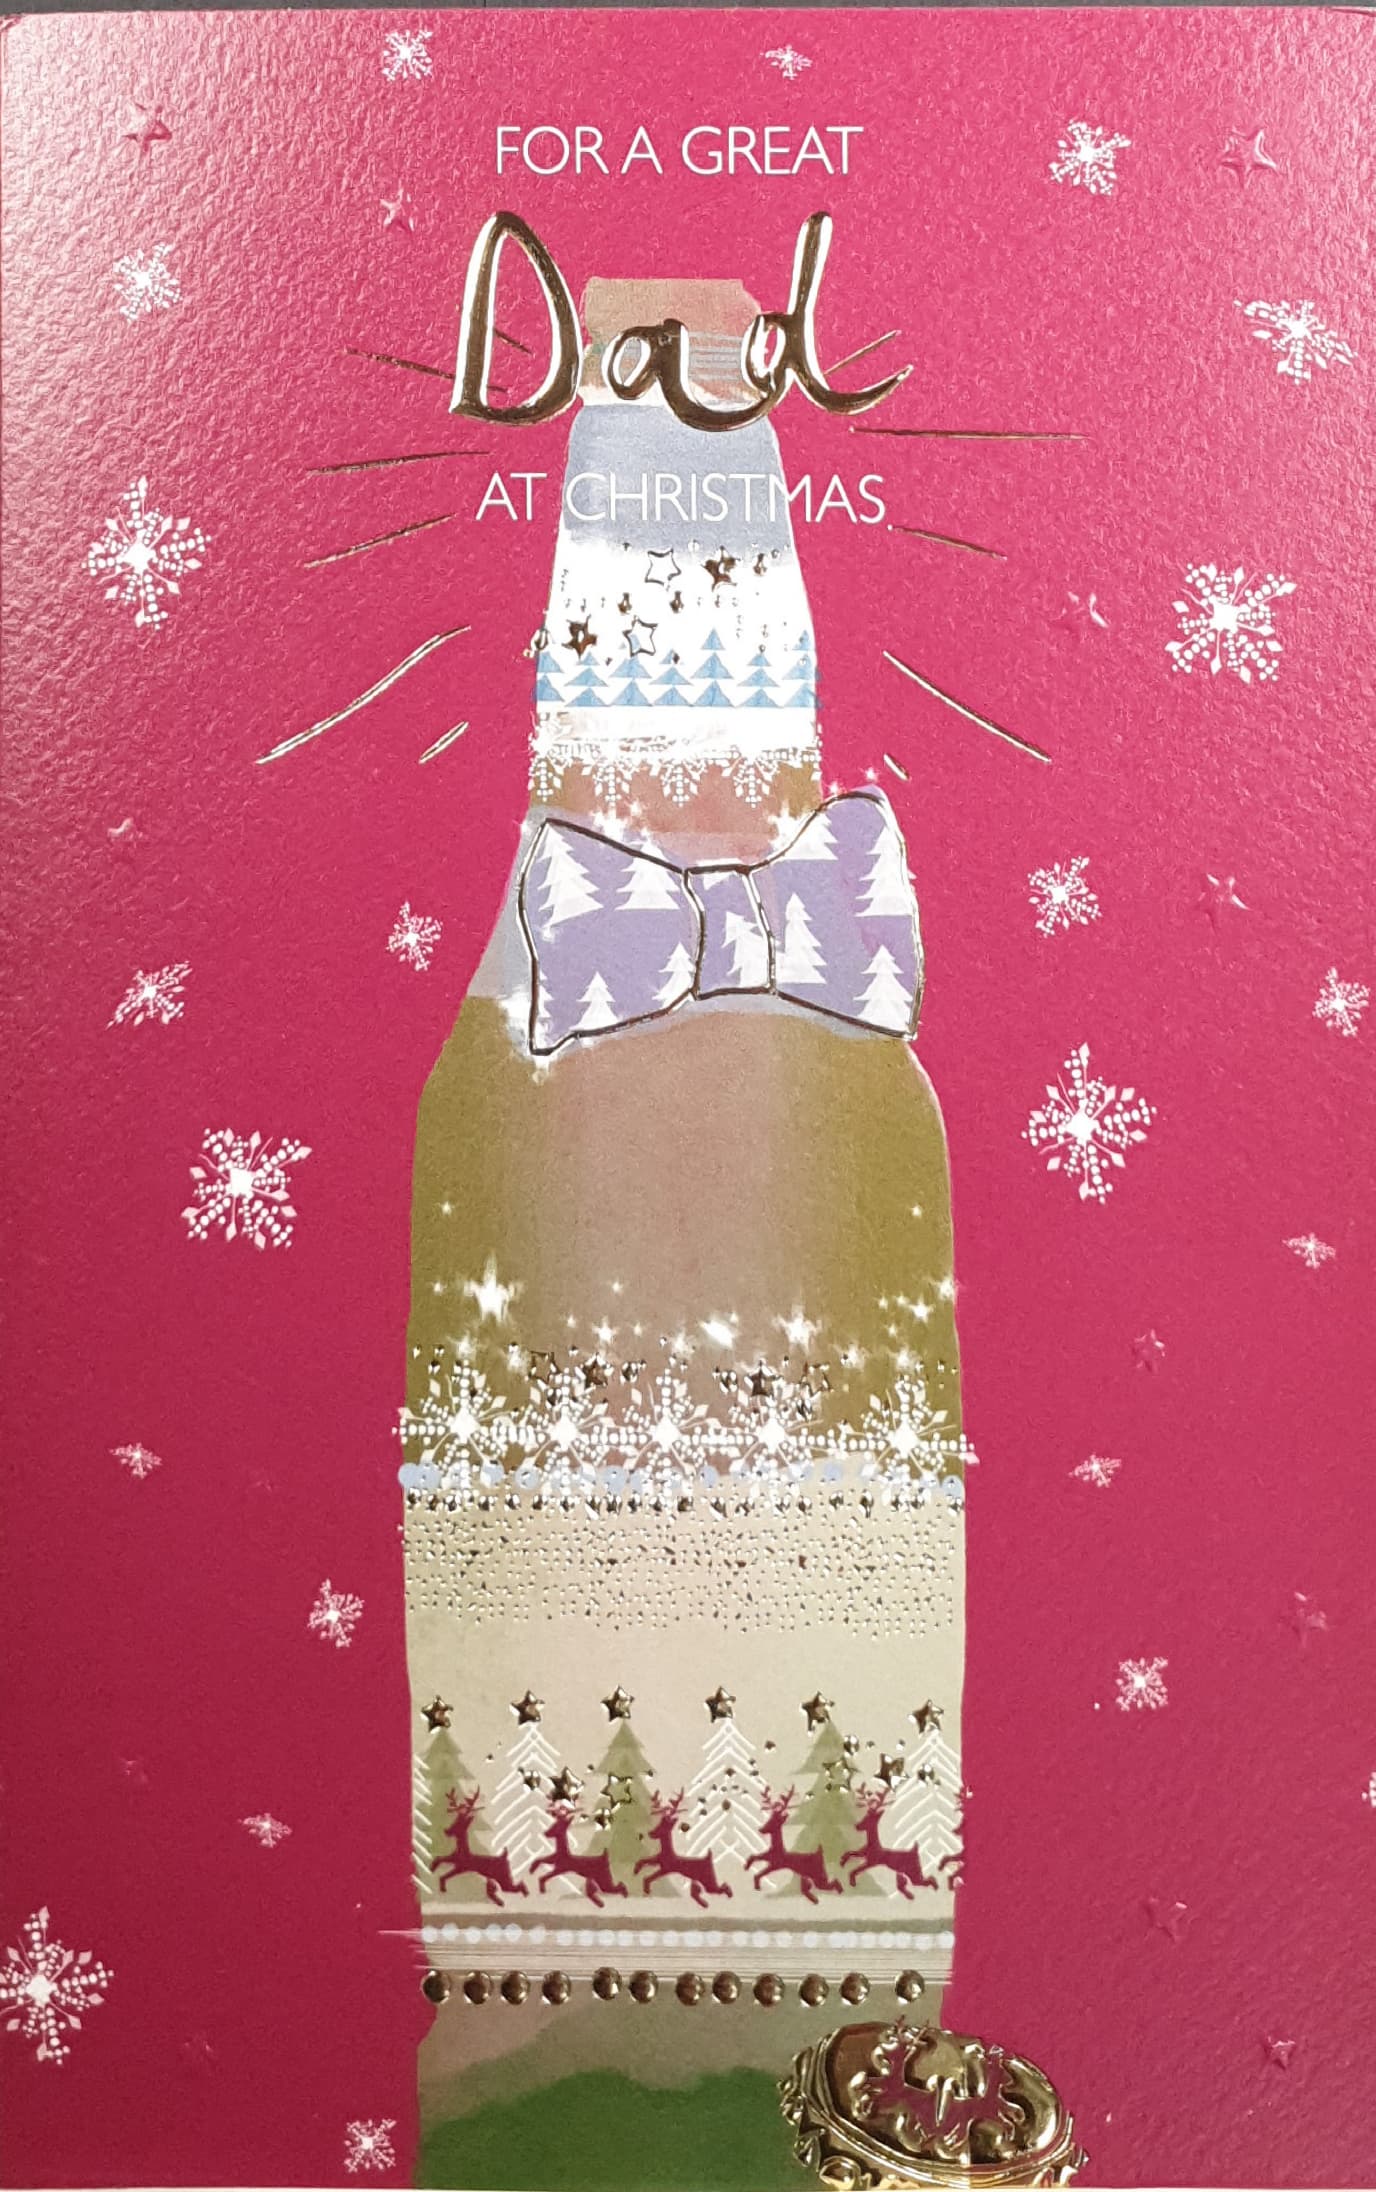 Dad Christmas Card - Festive Golden Beer Bottle